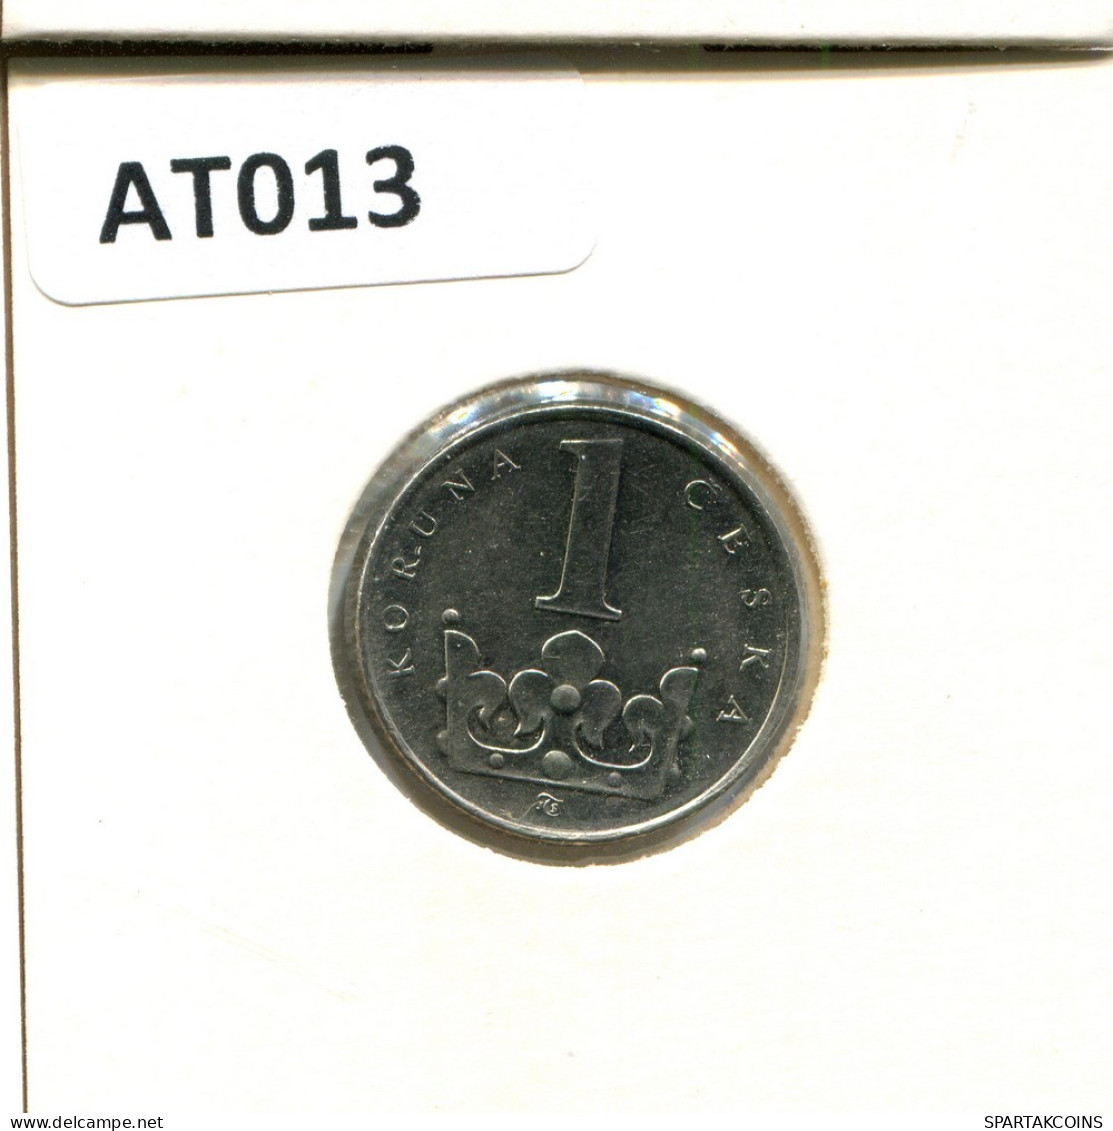 1 KORUNA 1995 CZECH REPUBLIC Coin #AT013.U.A - Czech Republic